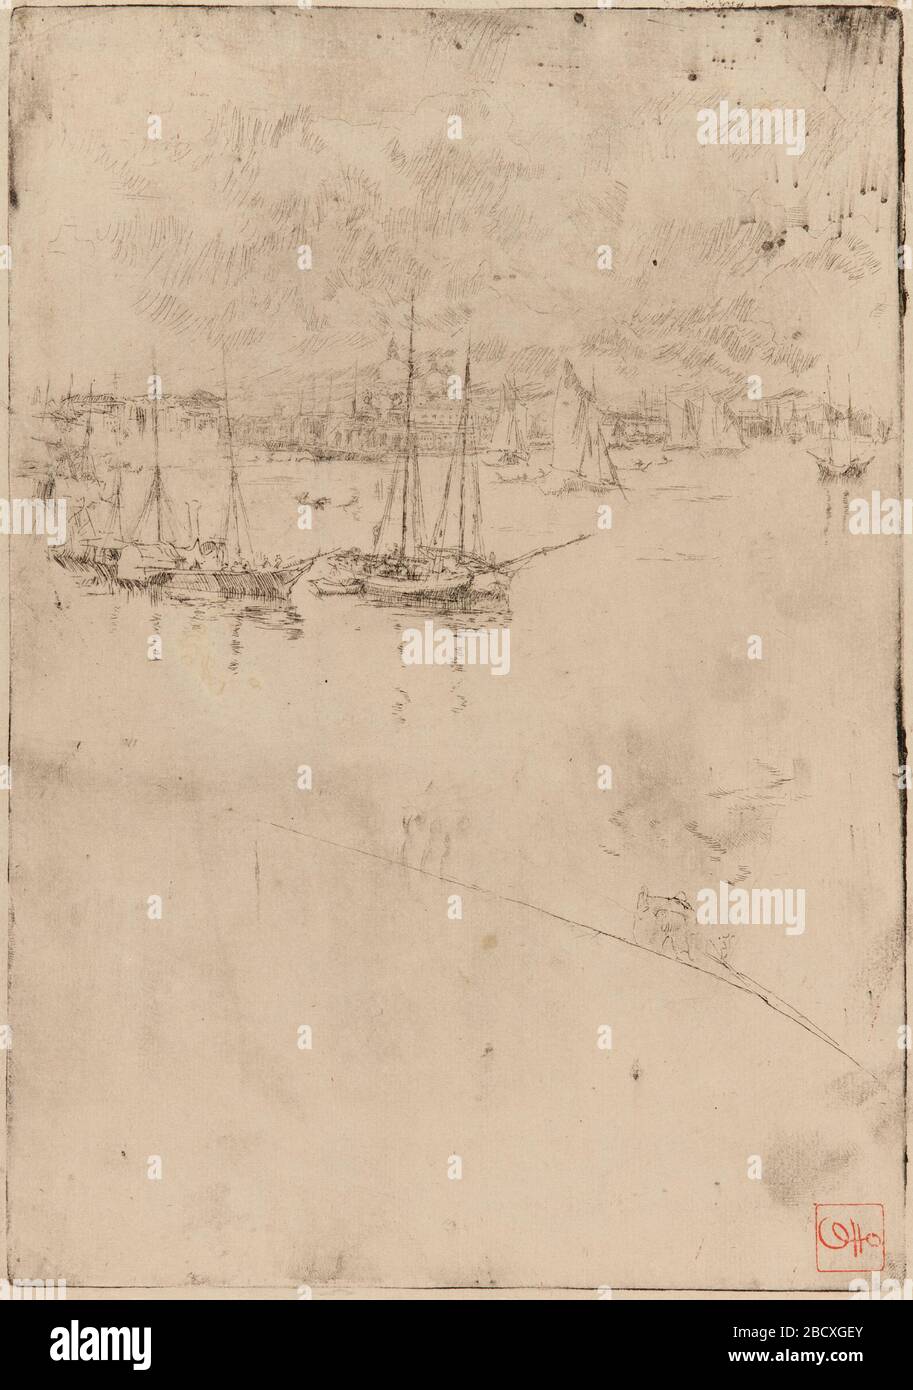 (Künstler) James McNeill Whistler; Vereinigte Staaten; 1879-1880; Radierung auf Papier; H x B: 26,4 x 18,5 cm (10 3/8 x 7 5/16 in); Geschenk von Charles lang Freer The Steamboat Venice Stockfoto